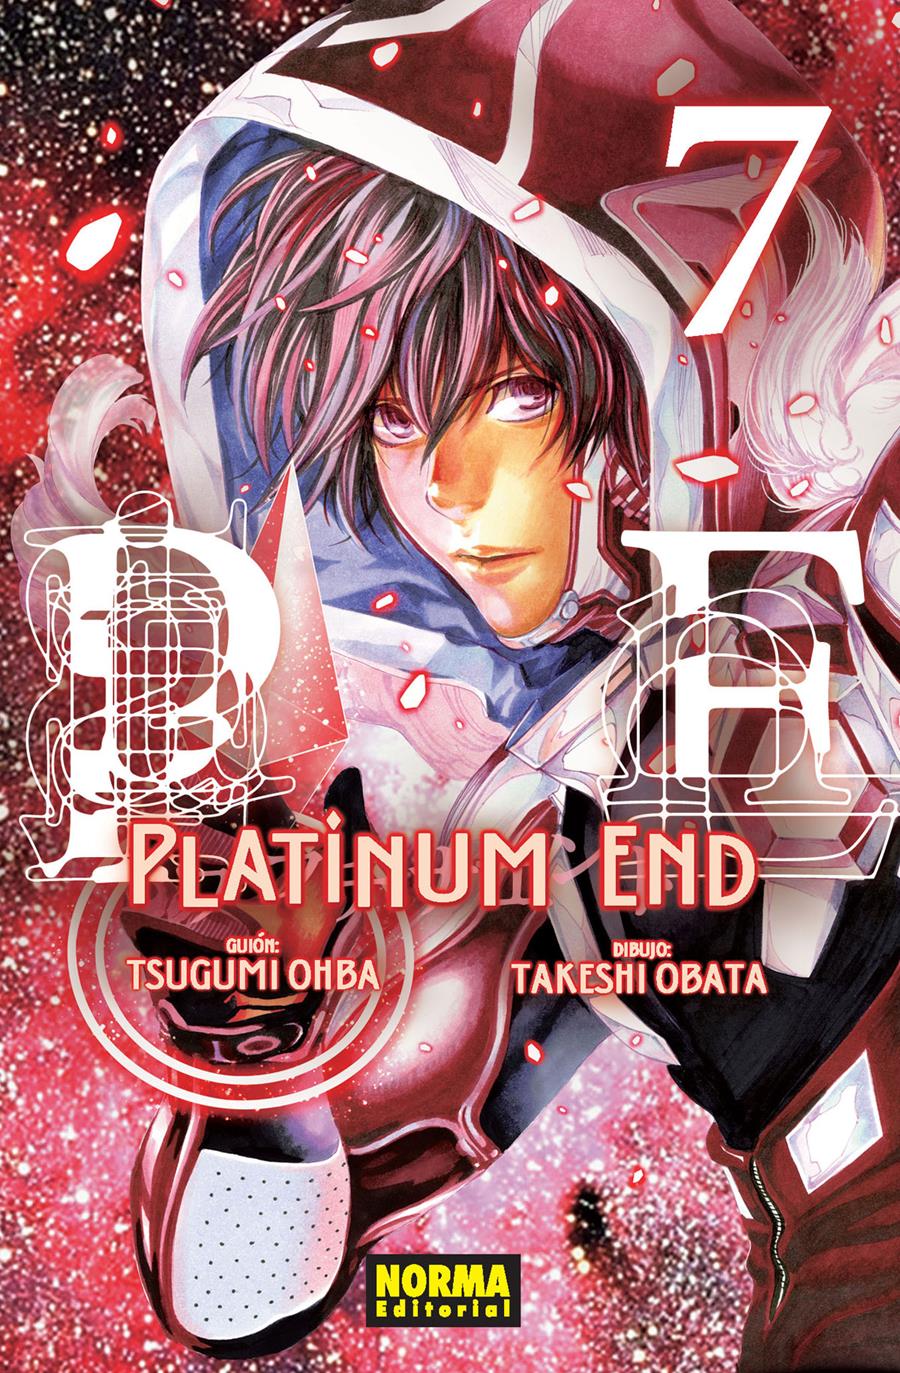 Platinum End 07 | N0618-NOR25 | Tsugumi Ohba, Takeshi Obata | Terra de Còmic - Tu tienda de cómics online especializada en cómics, manga y merchandising